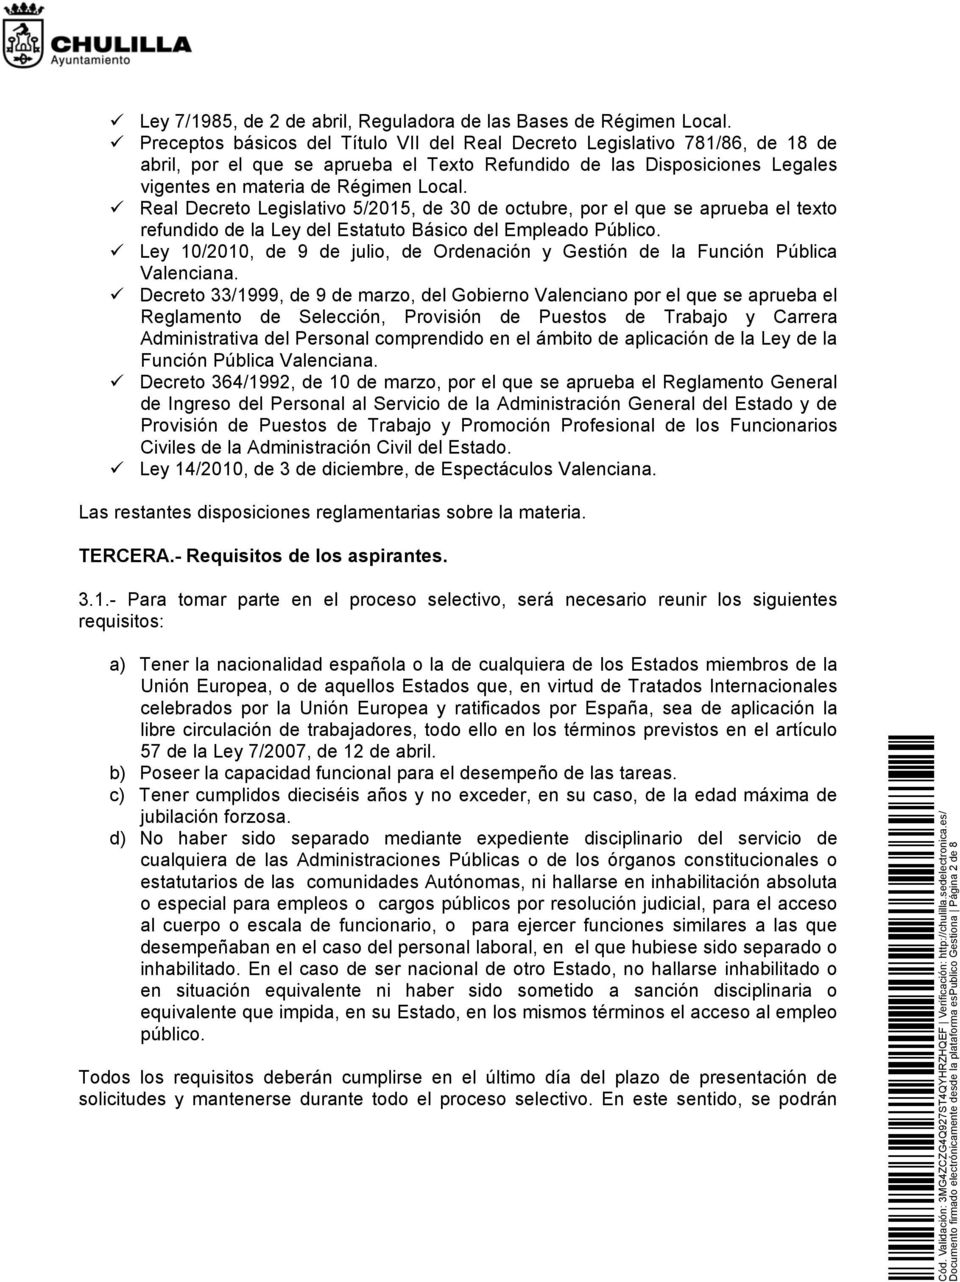 Real Decreto Legislativo 5/2015, de 30 de octubre, por el que se aprueba el texto refundido de la Ley del Estatuto Básico del Empleado Público.